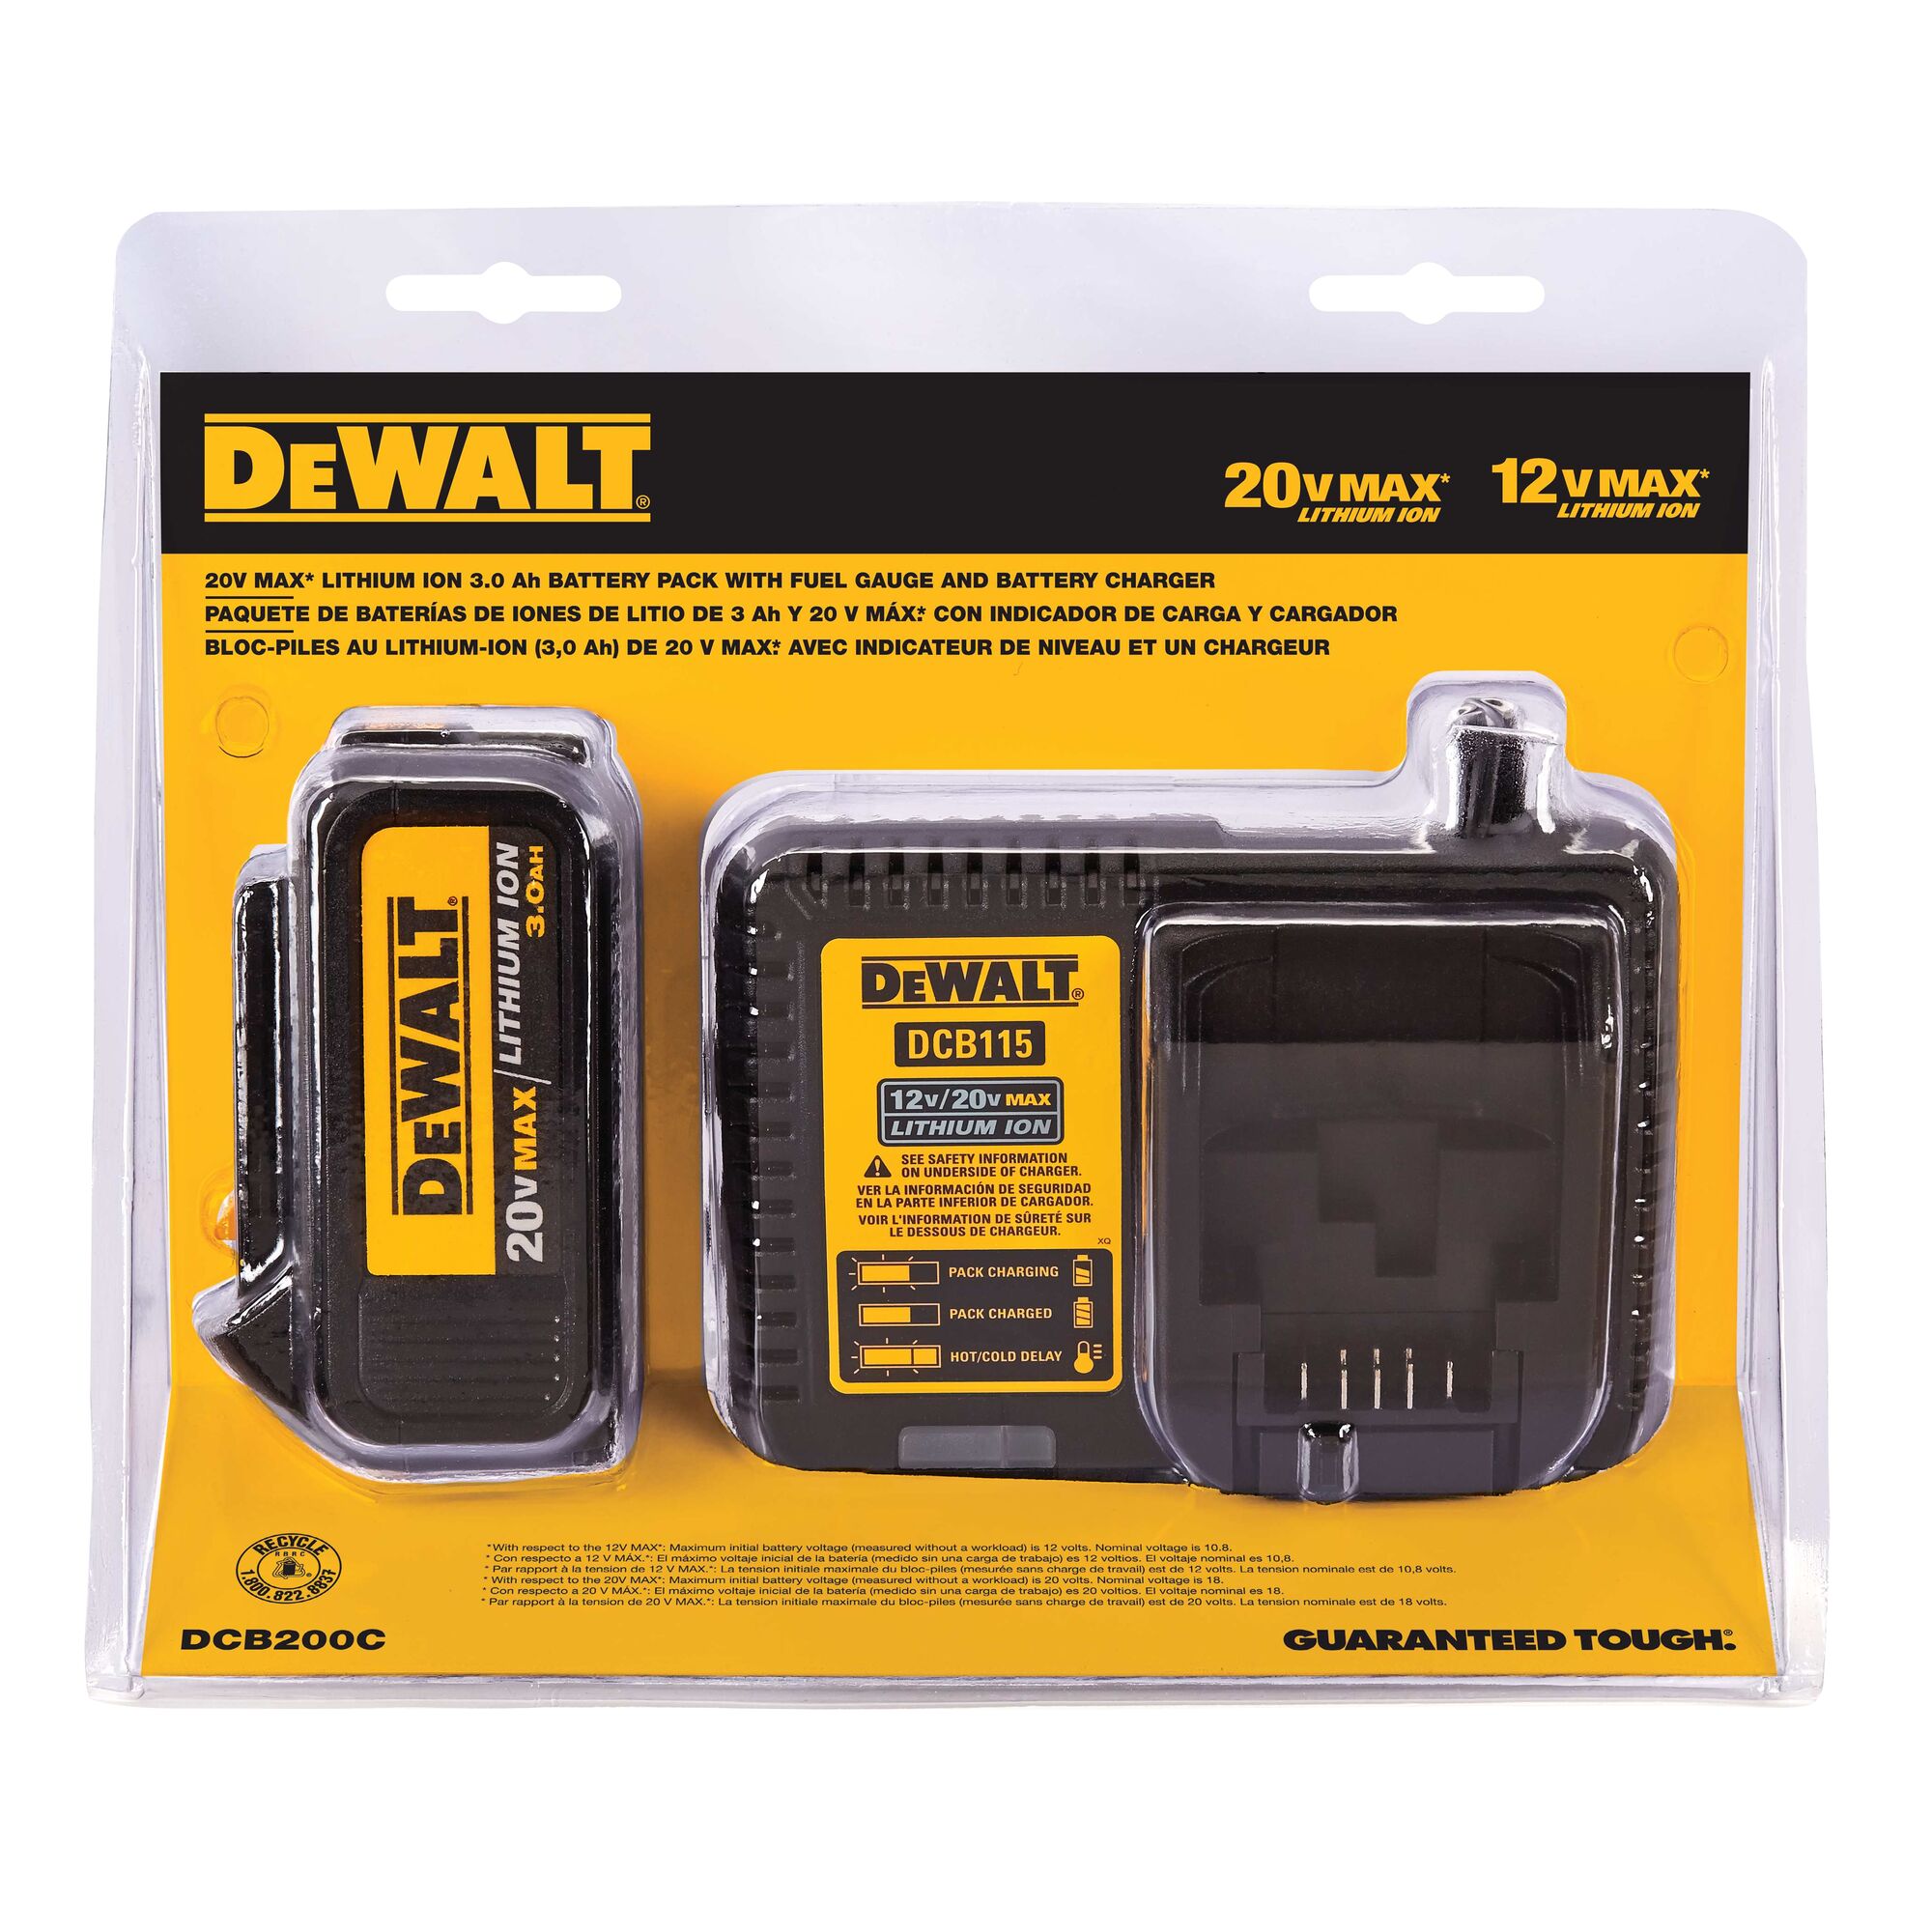 20V MAX* Li-ION Battery and Charger | DEWALT